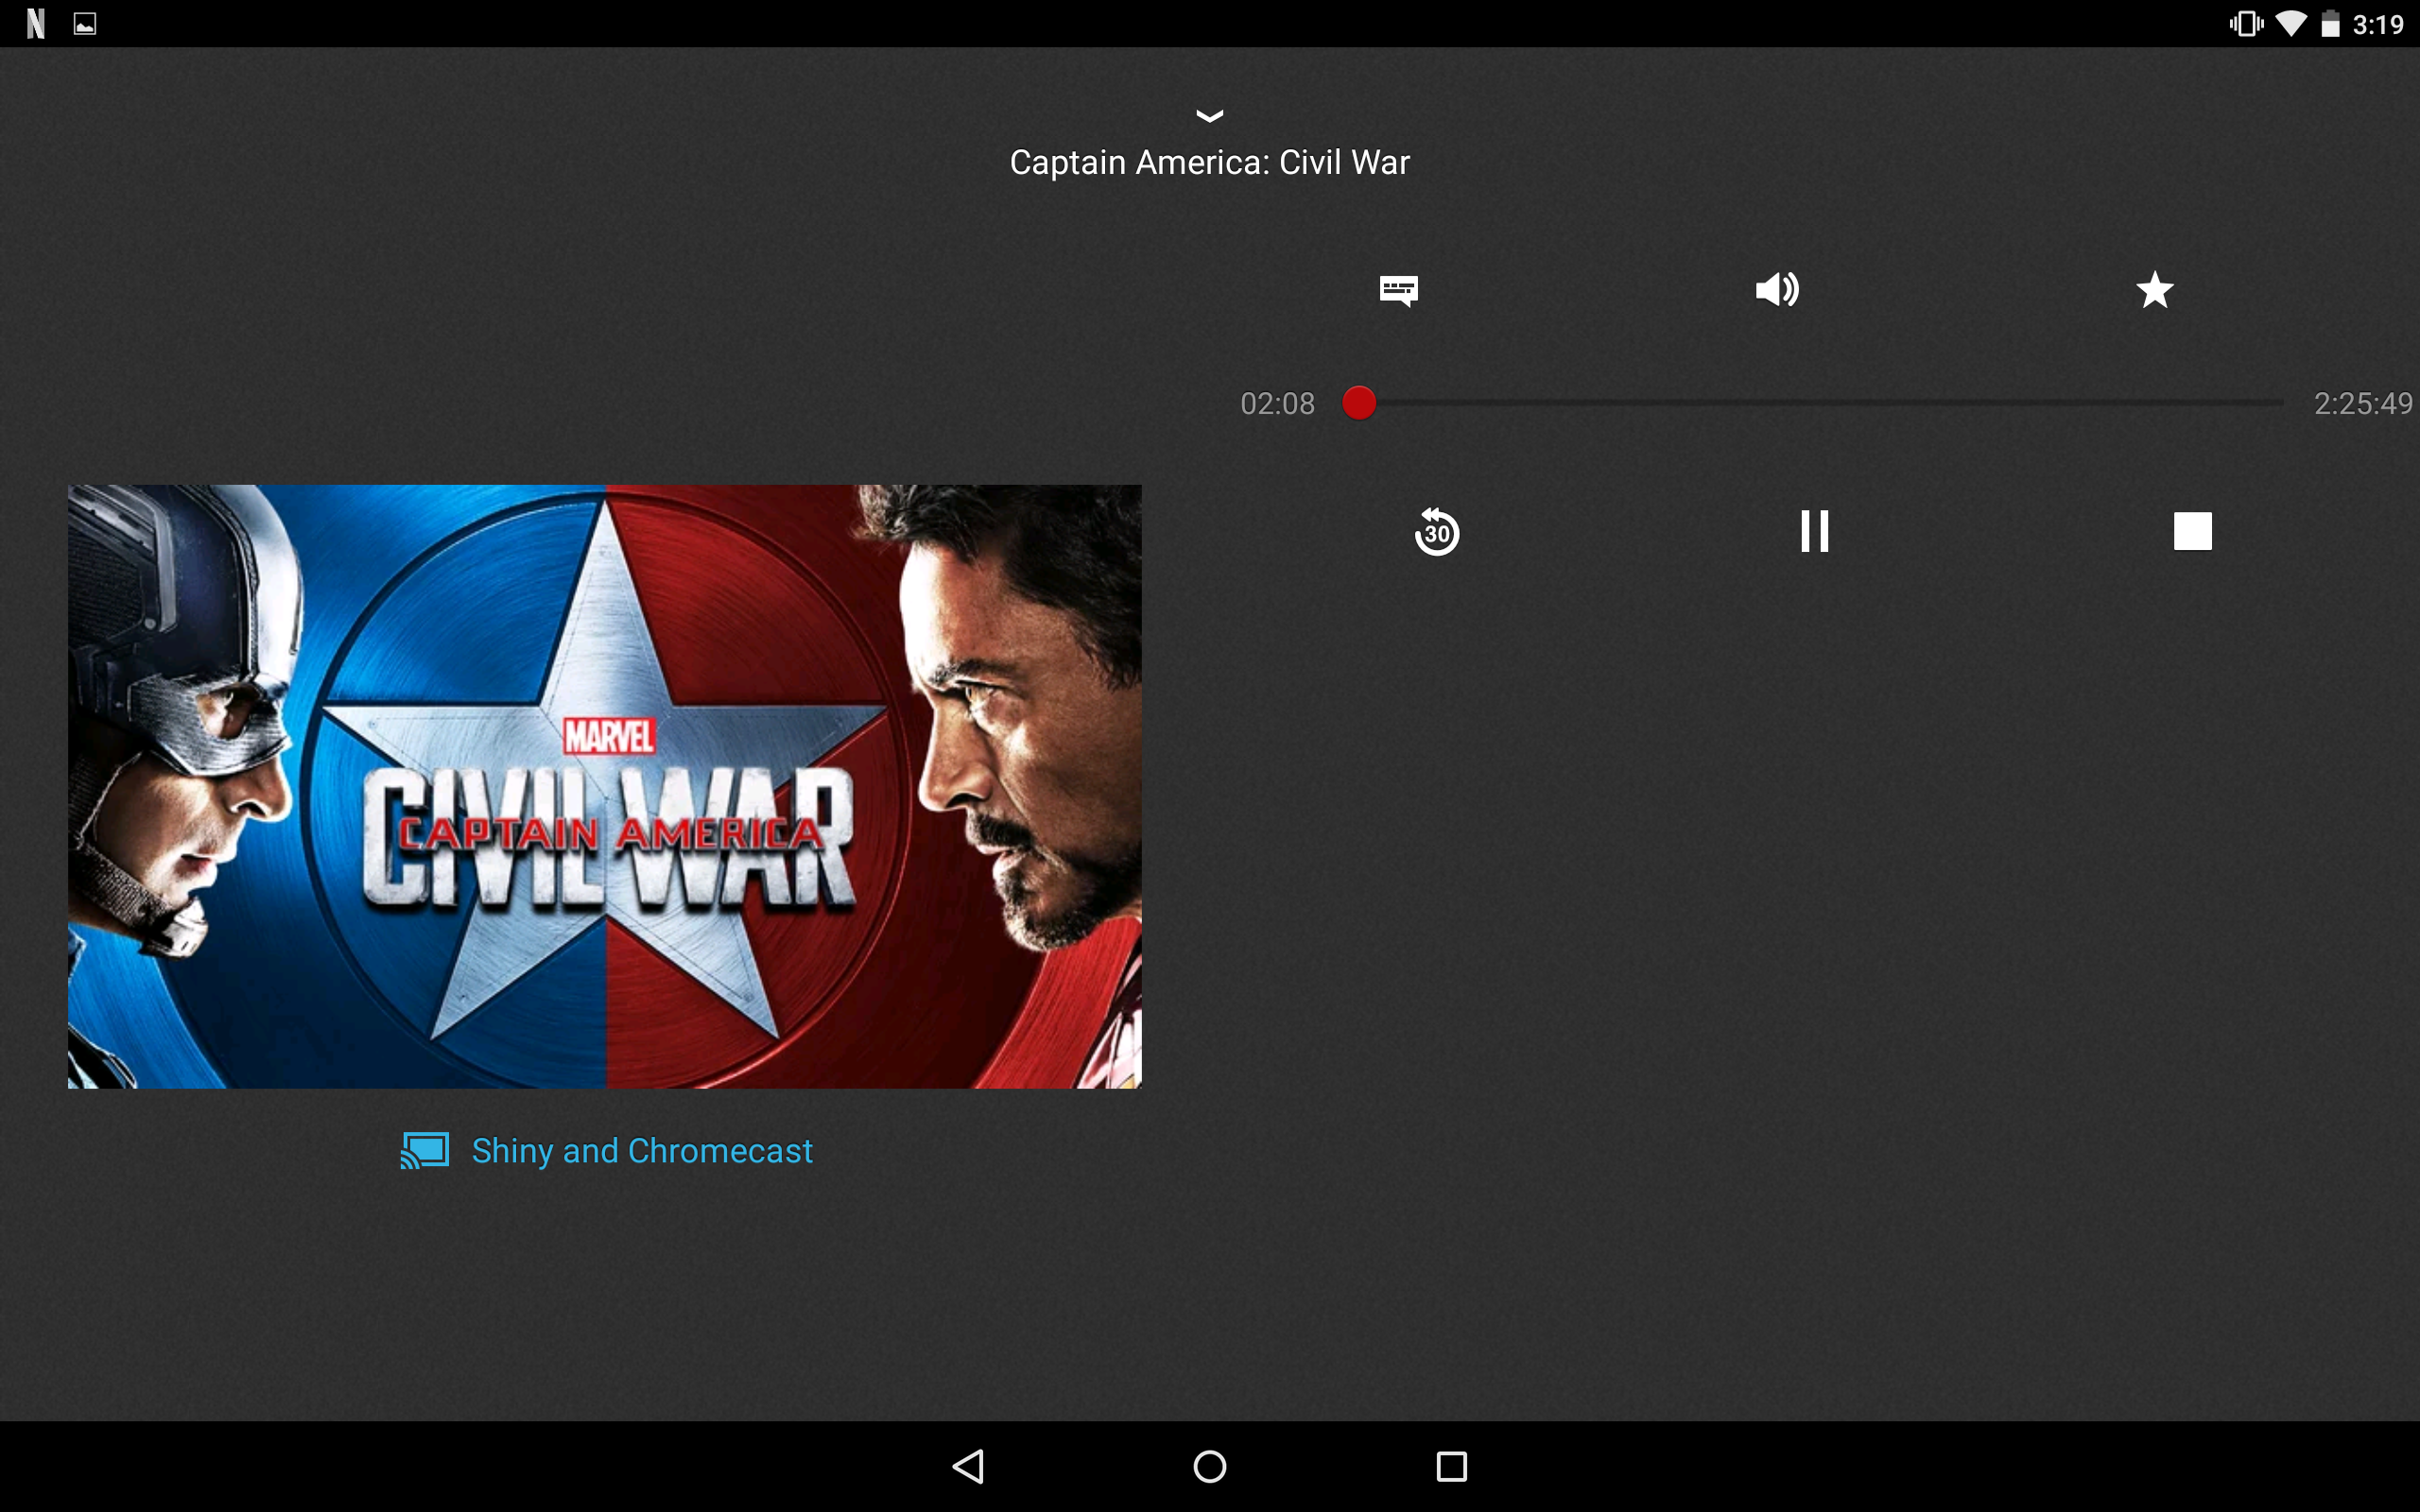 google chromecast app for windows